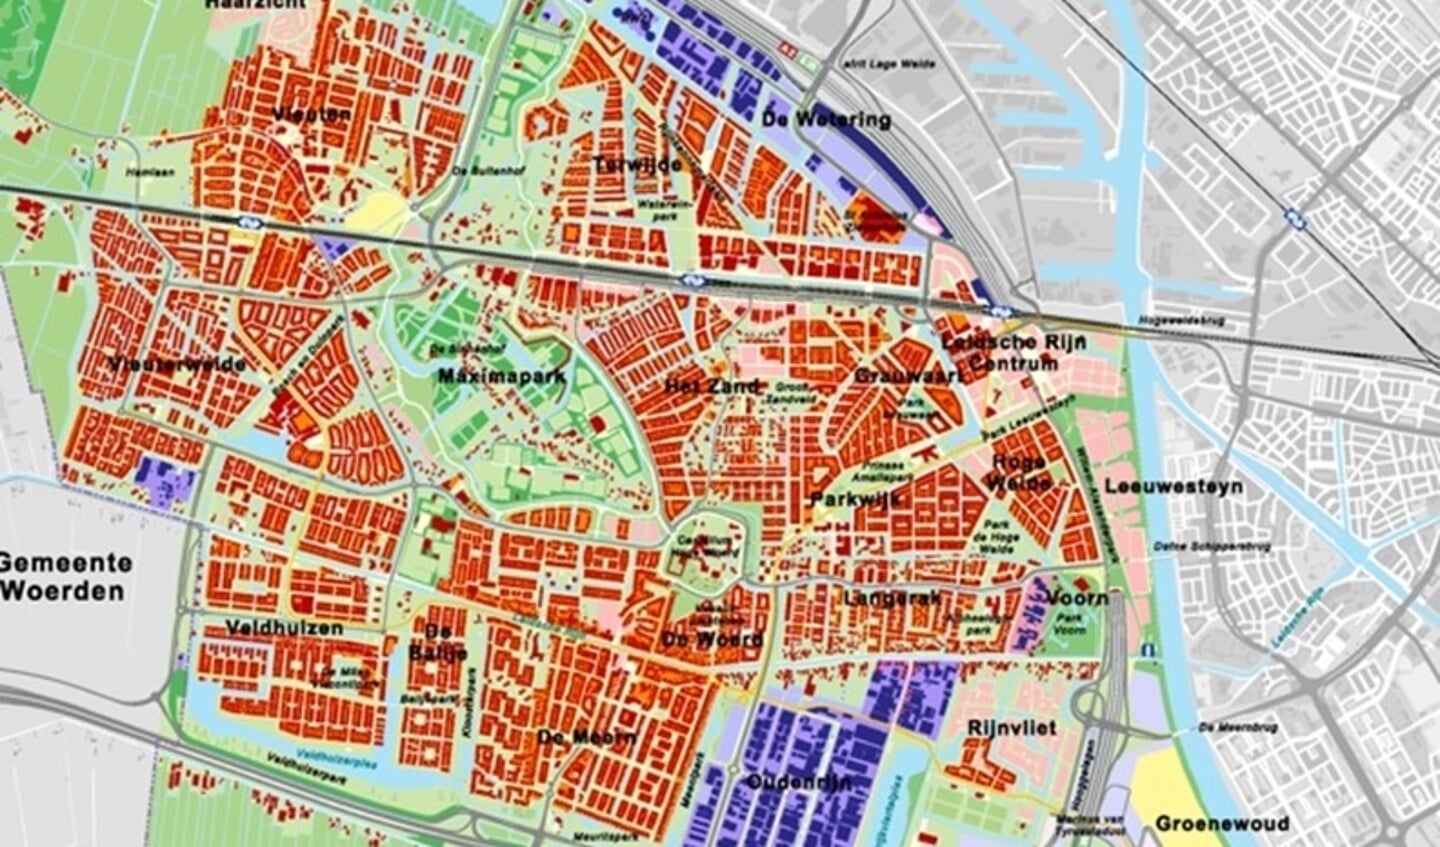 De woongebieden, het groen en de bedrijventerreinen zijn ingekleurd in deze kaart, met de namen van de wijken erbij.